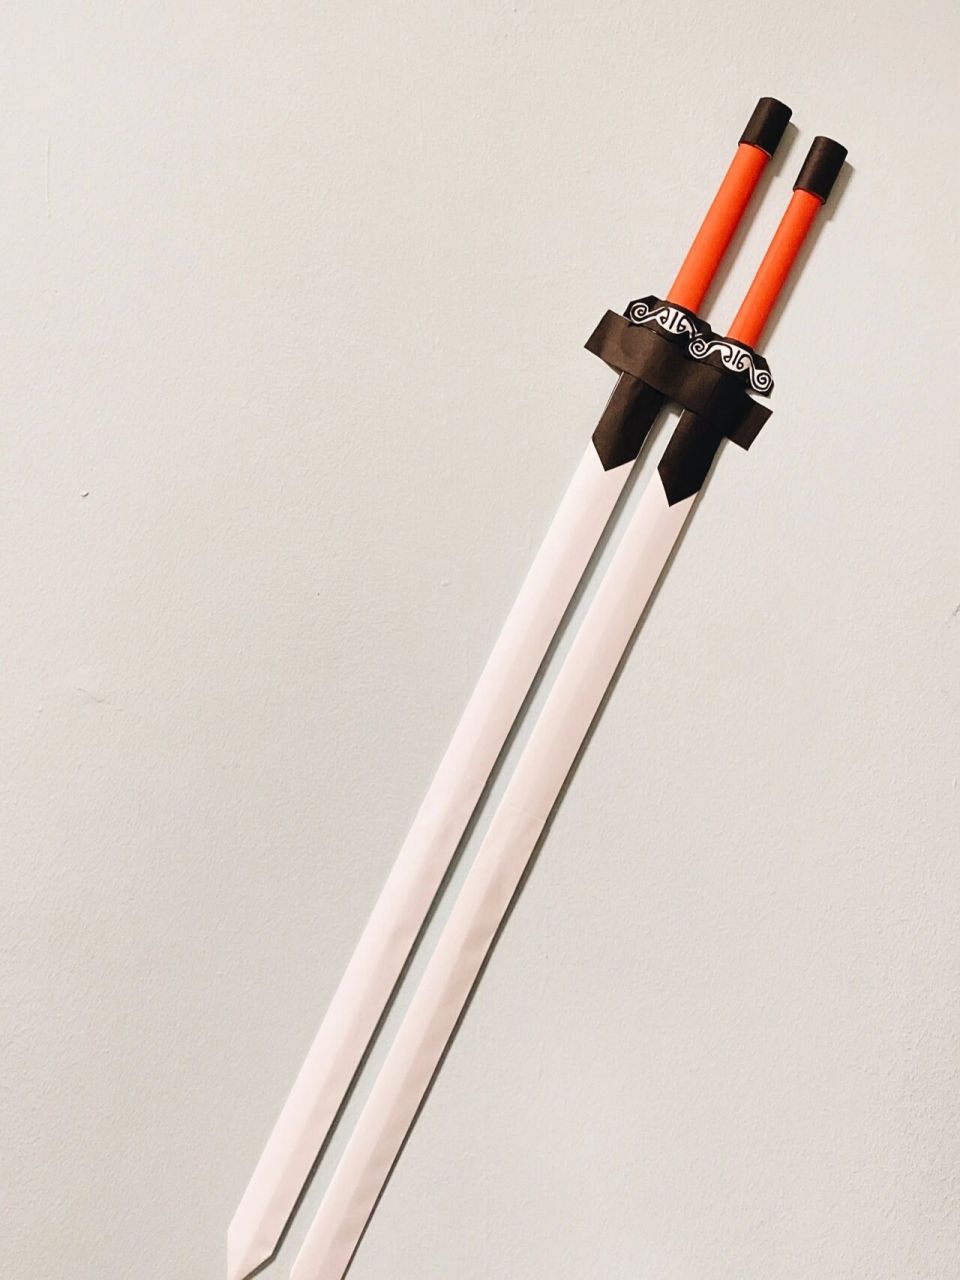 折纸·武器:刘备的双股剑 最近在回顾电视剧《三国演义》,觉得刘备的